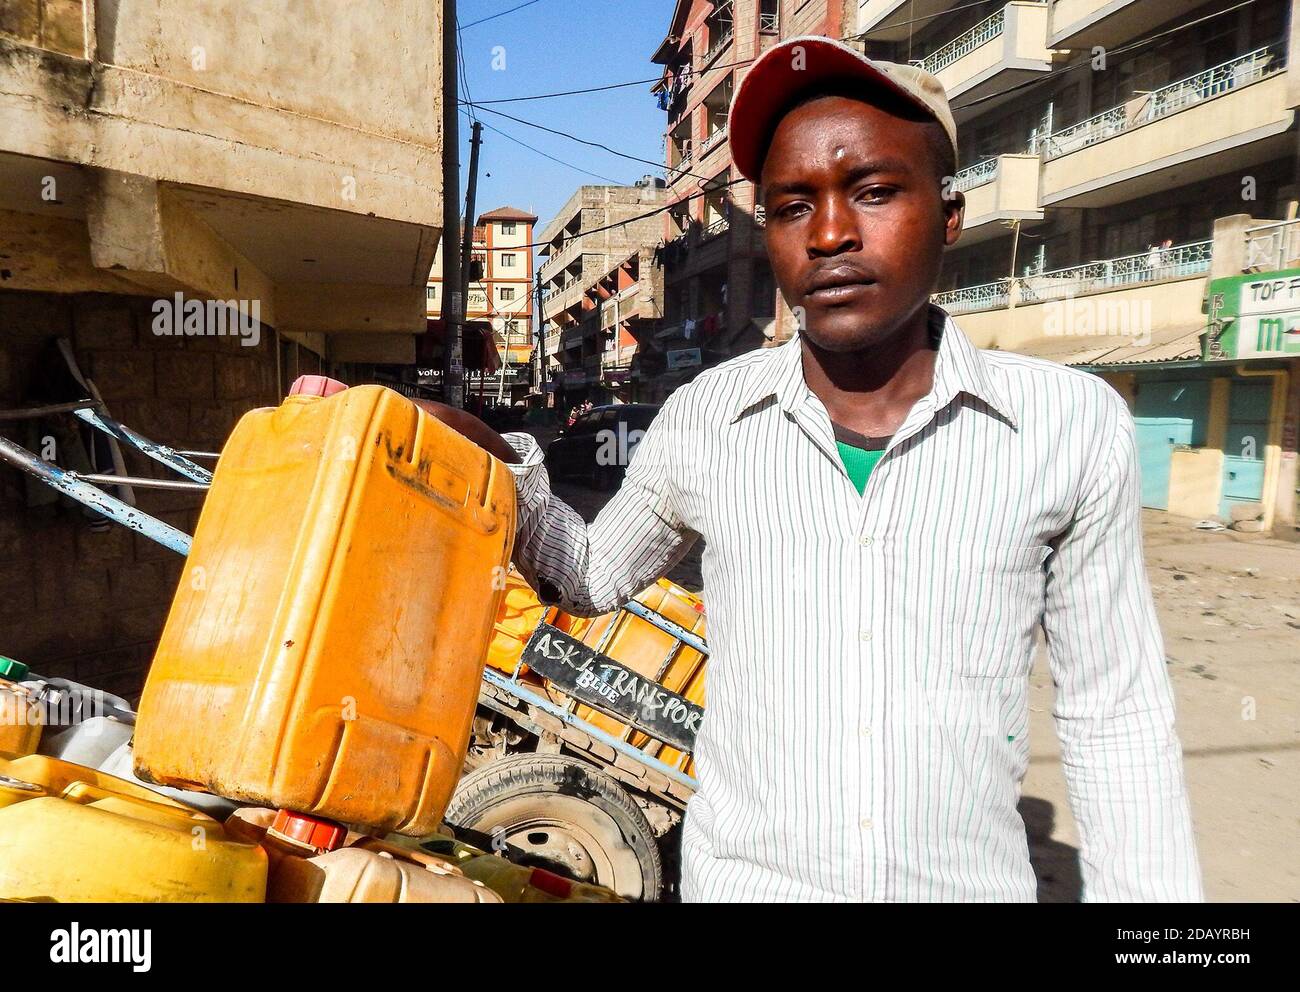 Alfred Mutua, 26, waits for customers in the Umoja One area in Nairobi County, Kenya, where he sells water. Stock Photo